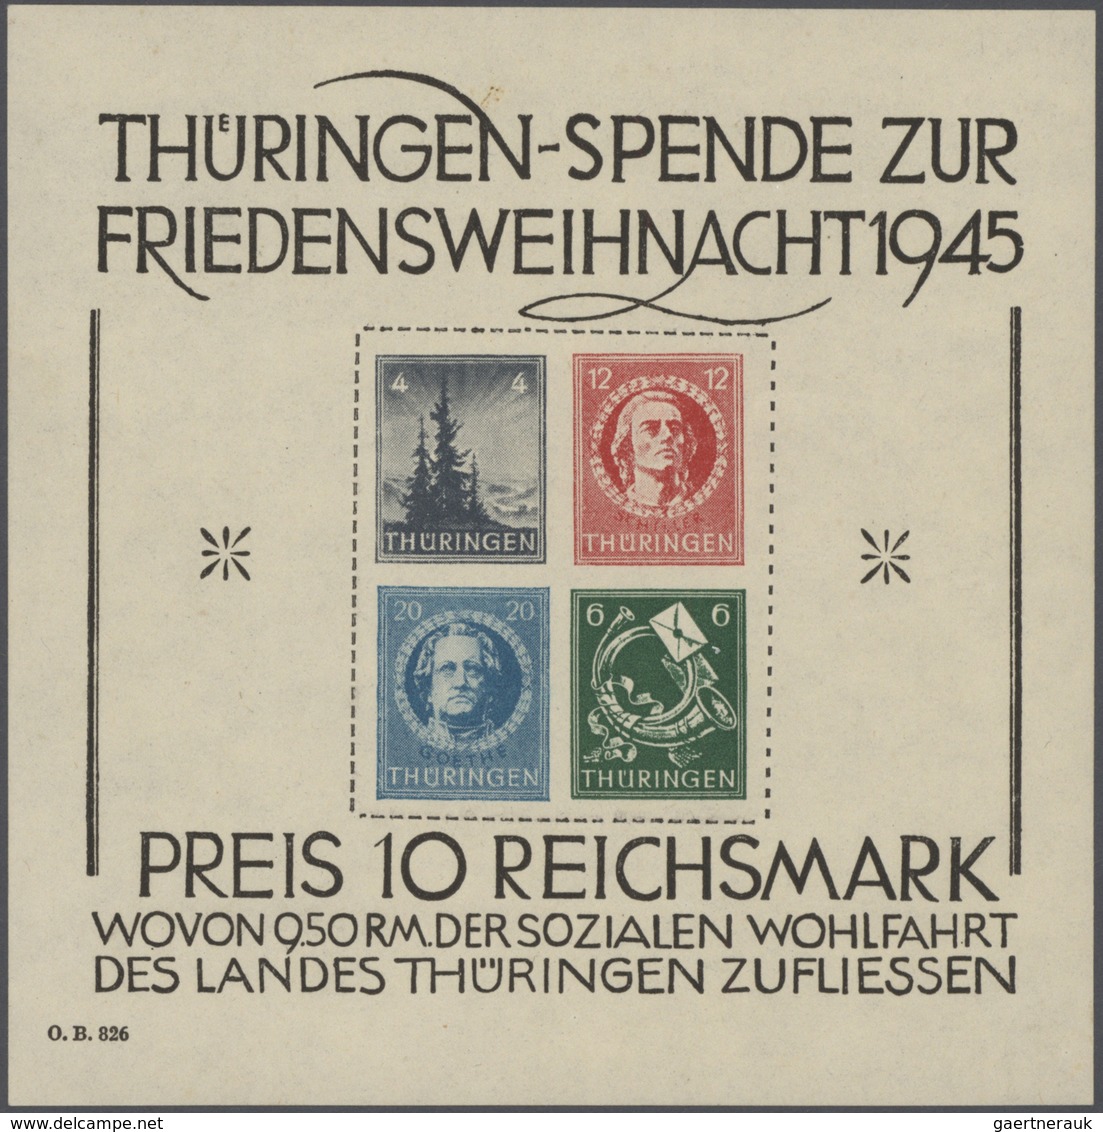 32120 Deutschland nach 1945: 1945/1957, meist bis 1949, urige Sammlung in zwei Lindner-Ringbindern sowie z